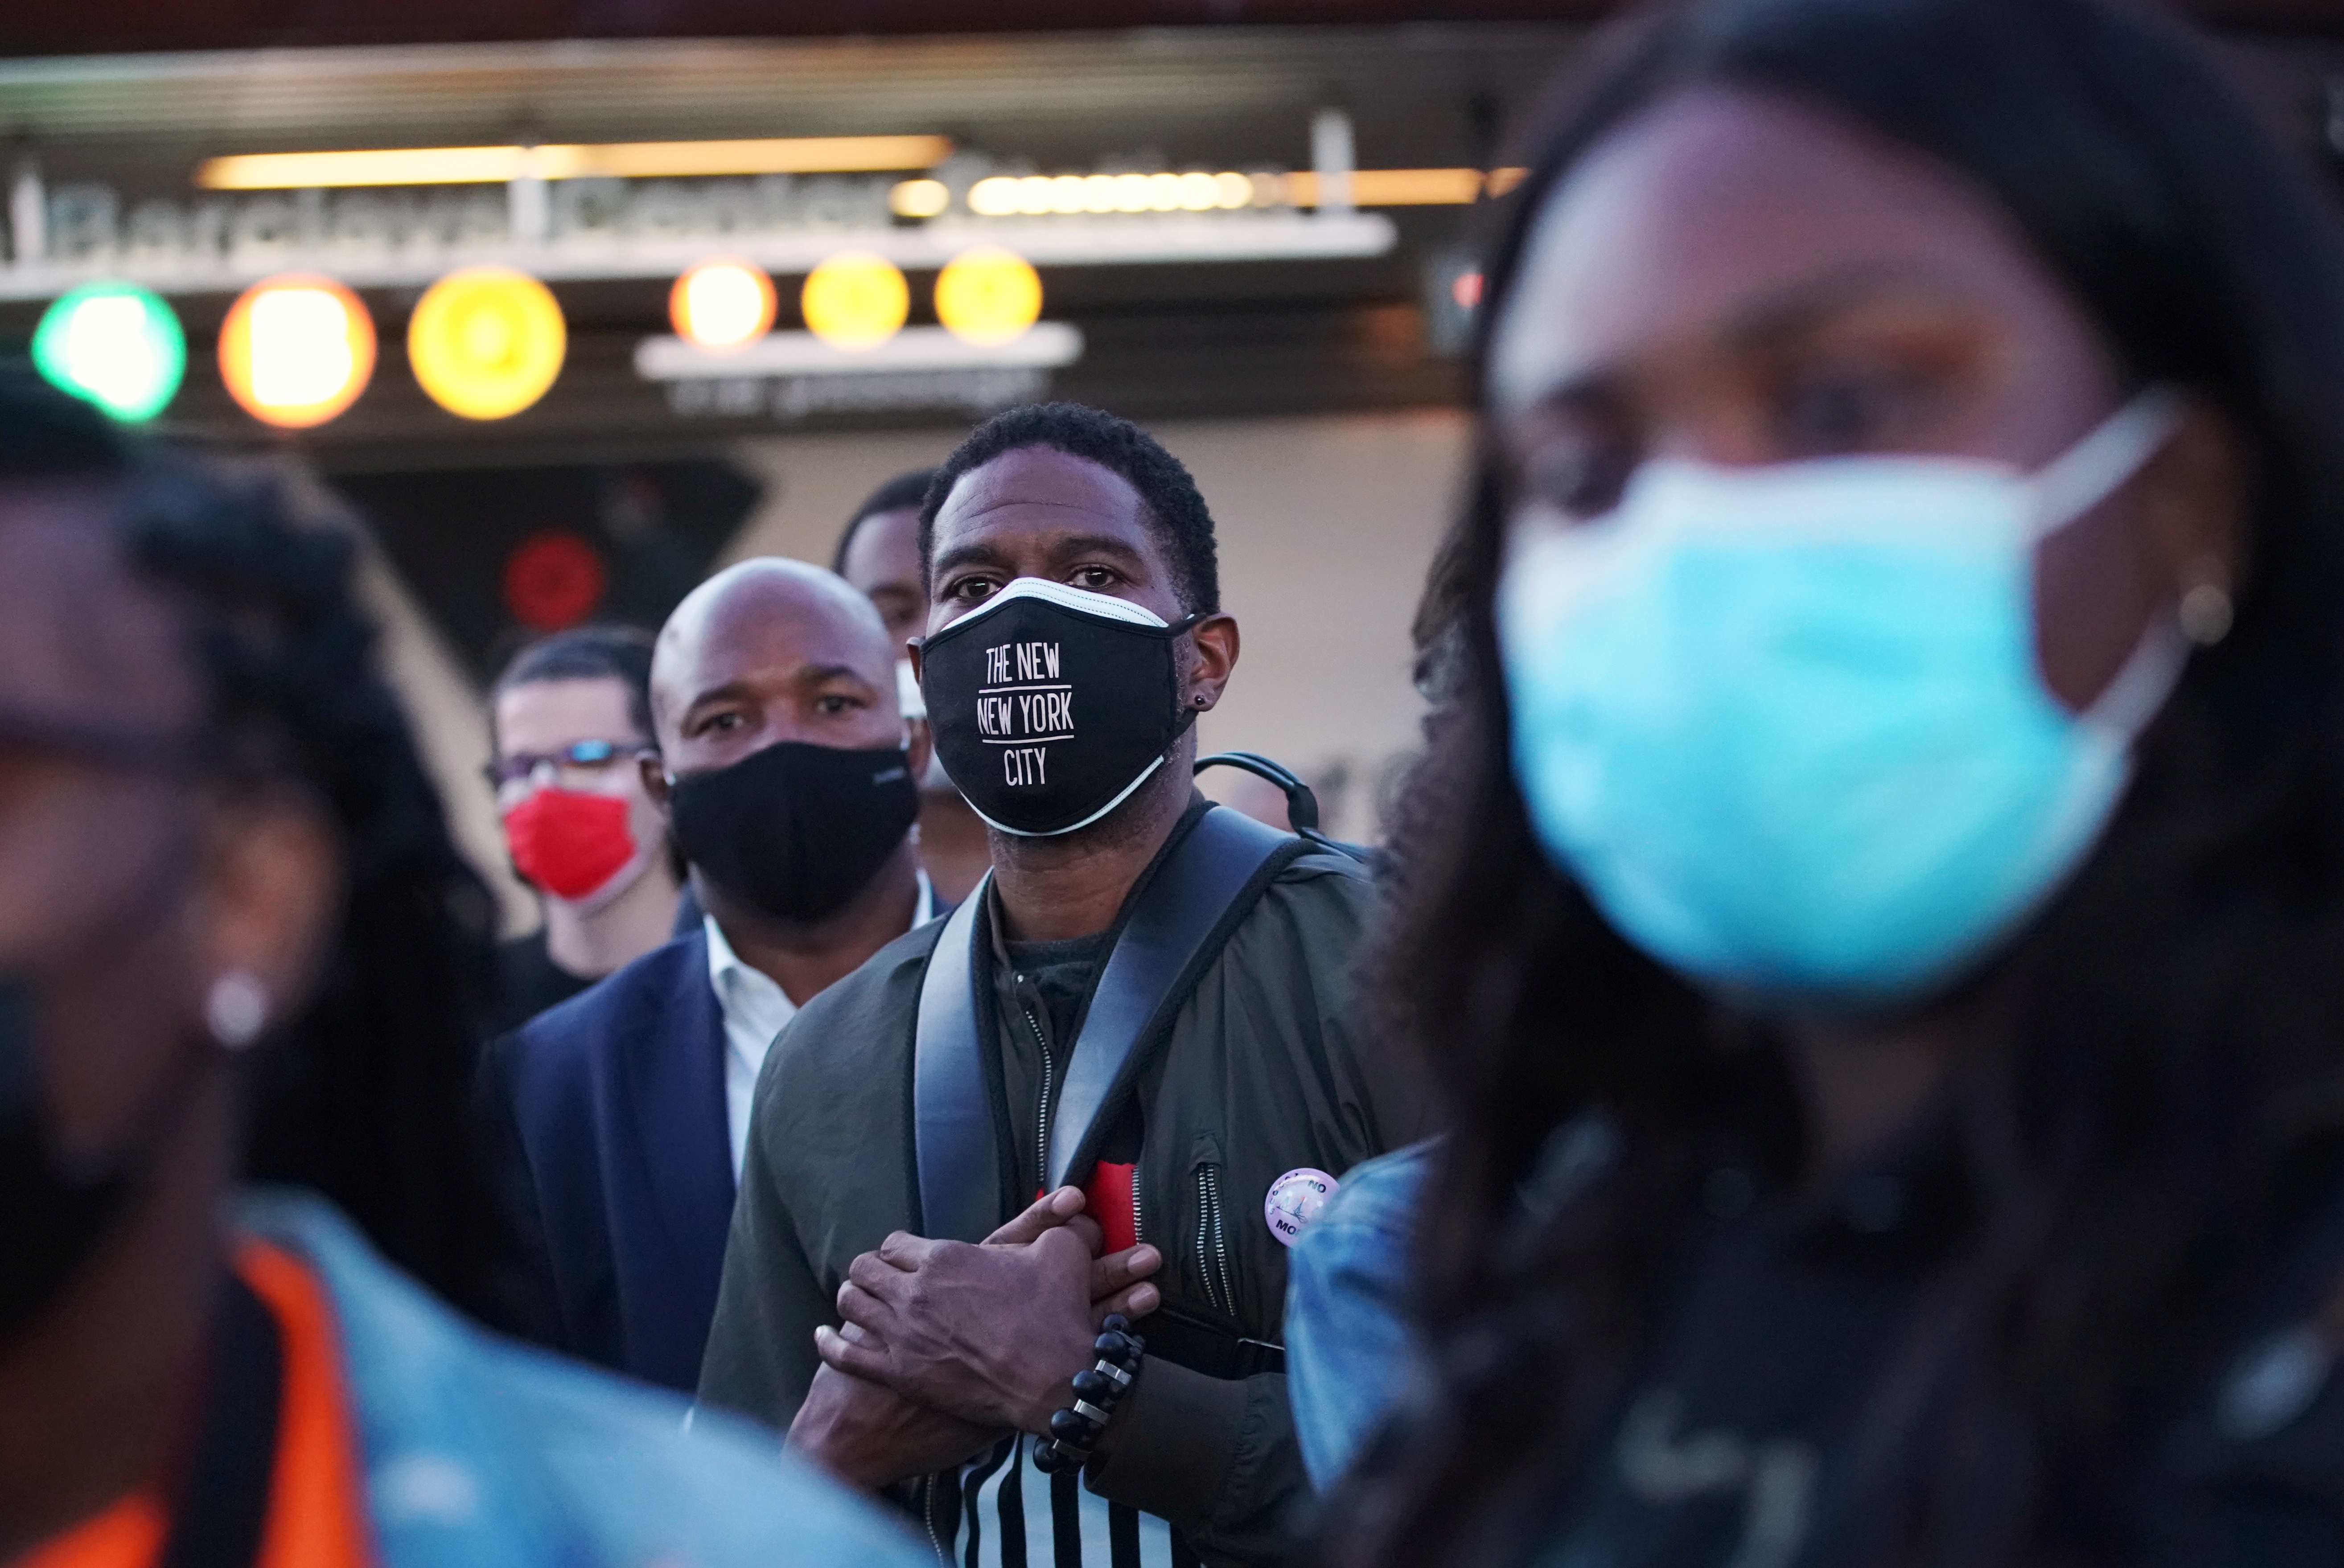 Personas en Brooklyn, New York utilizan máscaras en lugares públicos frente al creciente número de infectados por COVID-19 - REUTERS/Jeenah Moon